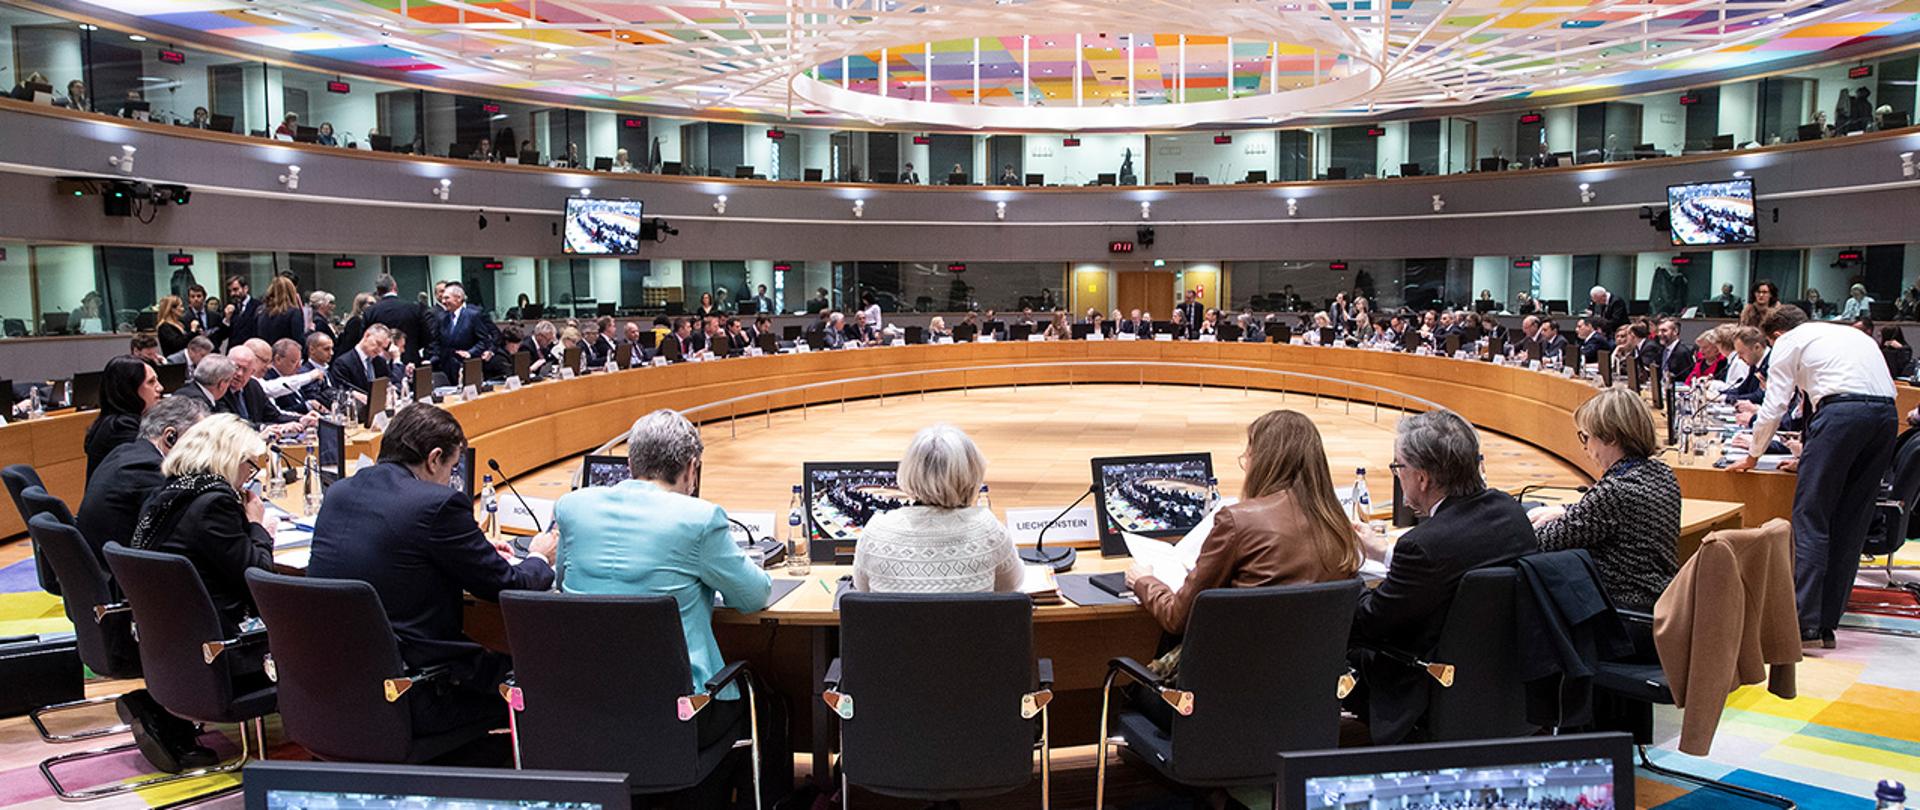 Nadzwyczajne posiedzenie Rady ds. Sprawiedliwości i Spraw Wewnętrznych w Brukseli. Na zdjęciu widać uczestników spotkania siedzących przy okrągłym stole.